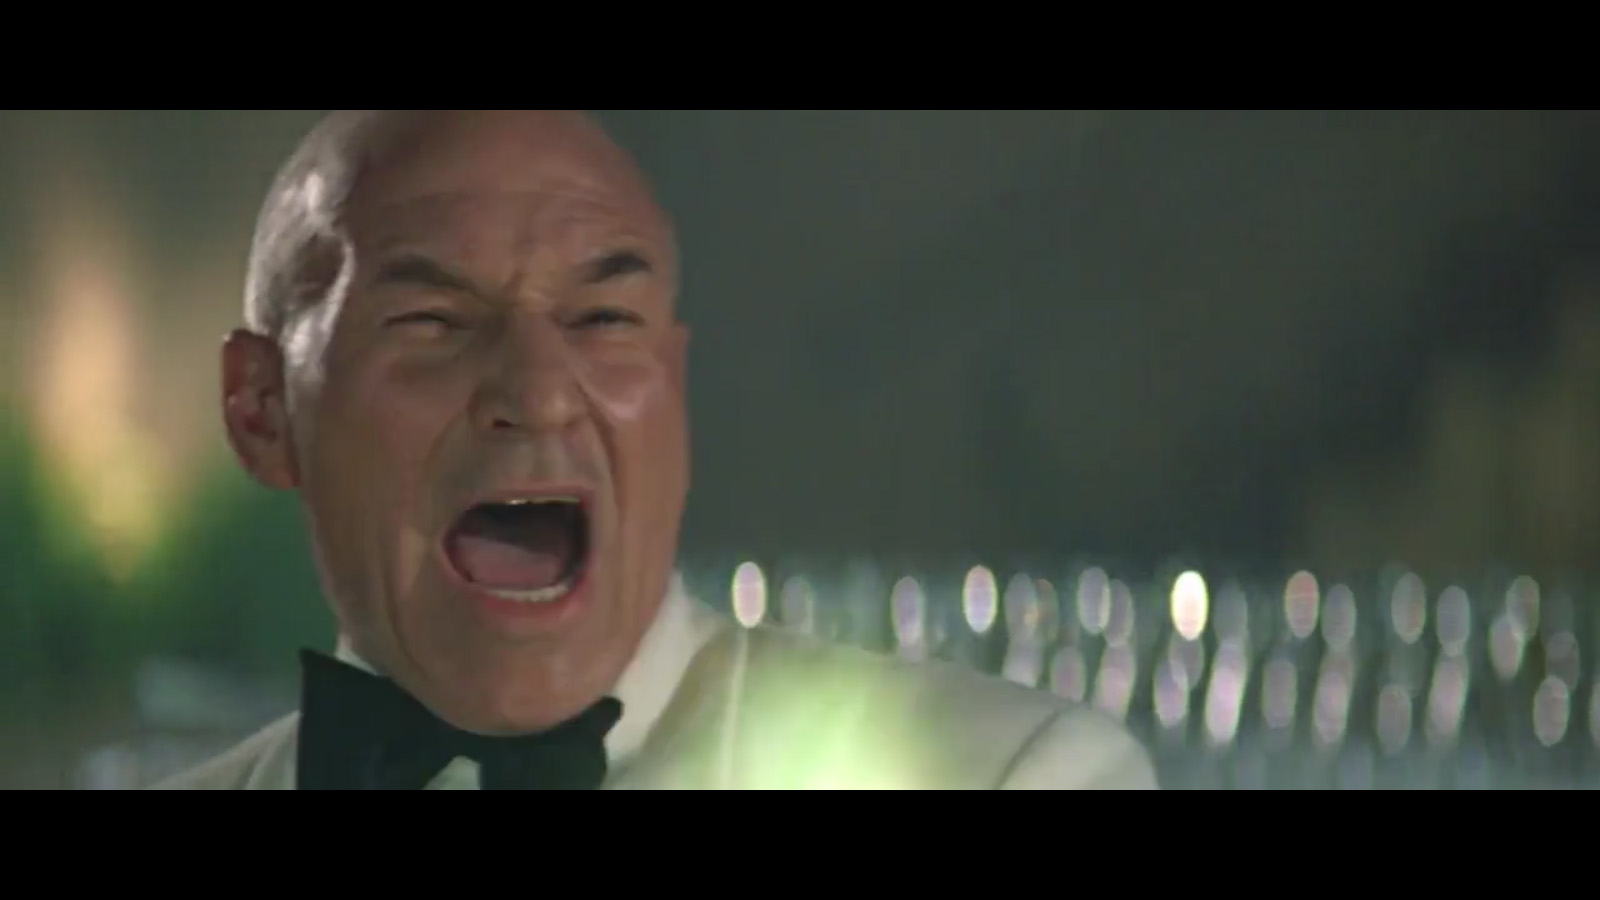 Picard firing 2 (screen capture)